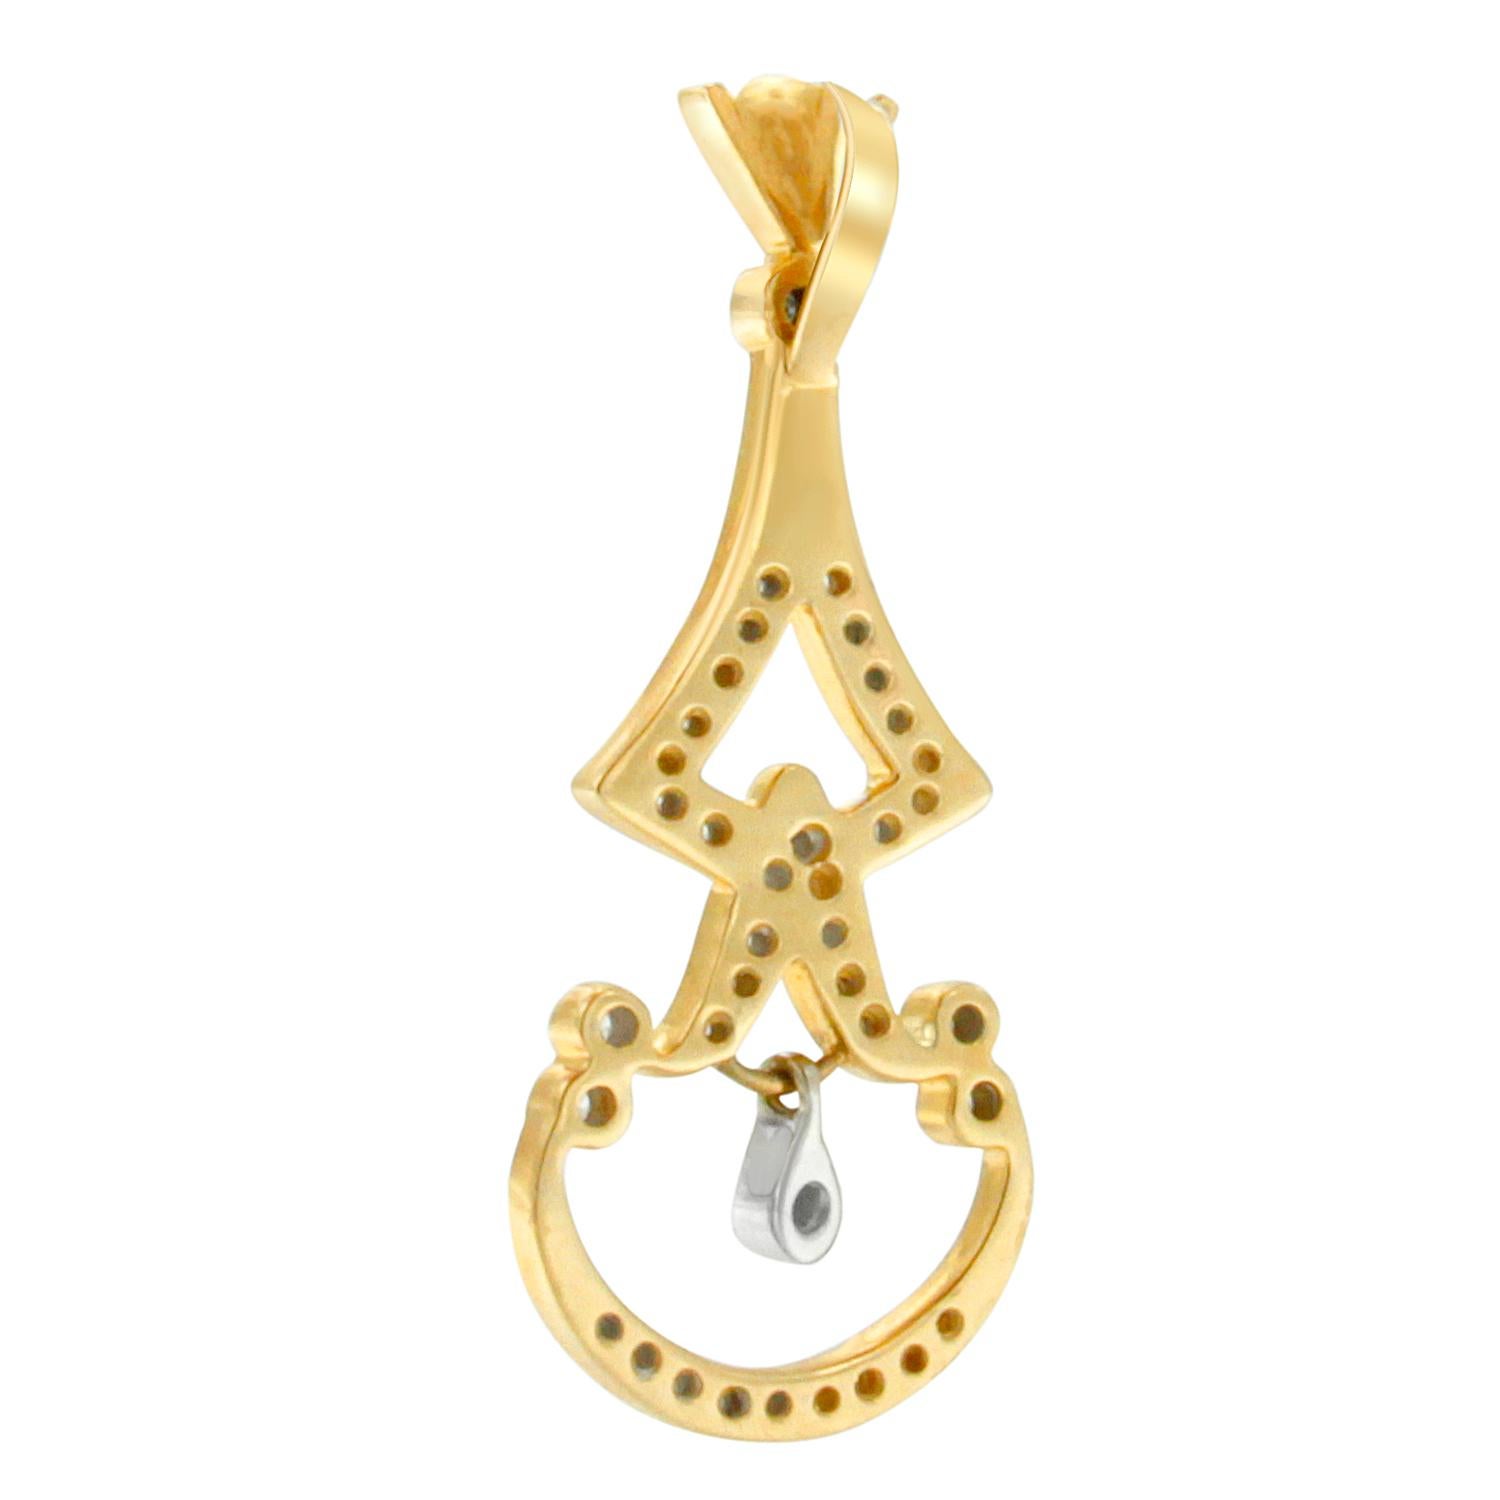 Diese stilvolle Halskette aus Gold und Diamanten versprüht den Charme der alten Welt, der für das 21. Jahrhundert aktualisiert wurde. Der aus hochwertigem 14-karätigem Gelbgold gefertigte Anhänger ist mit glänzenden runden Diamanten ausgefasst. Wird